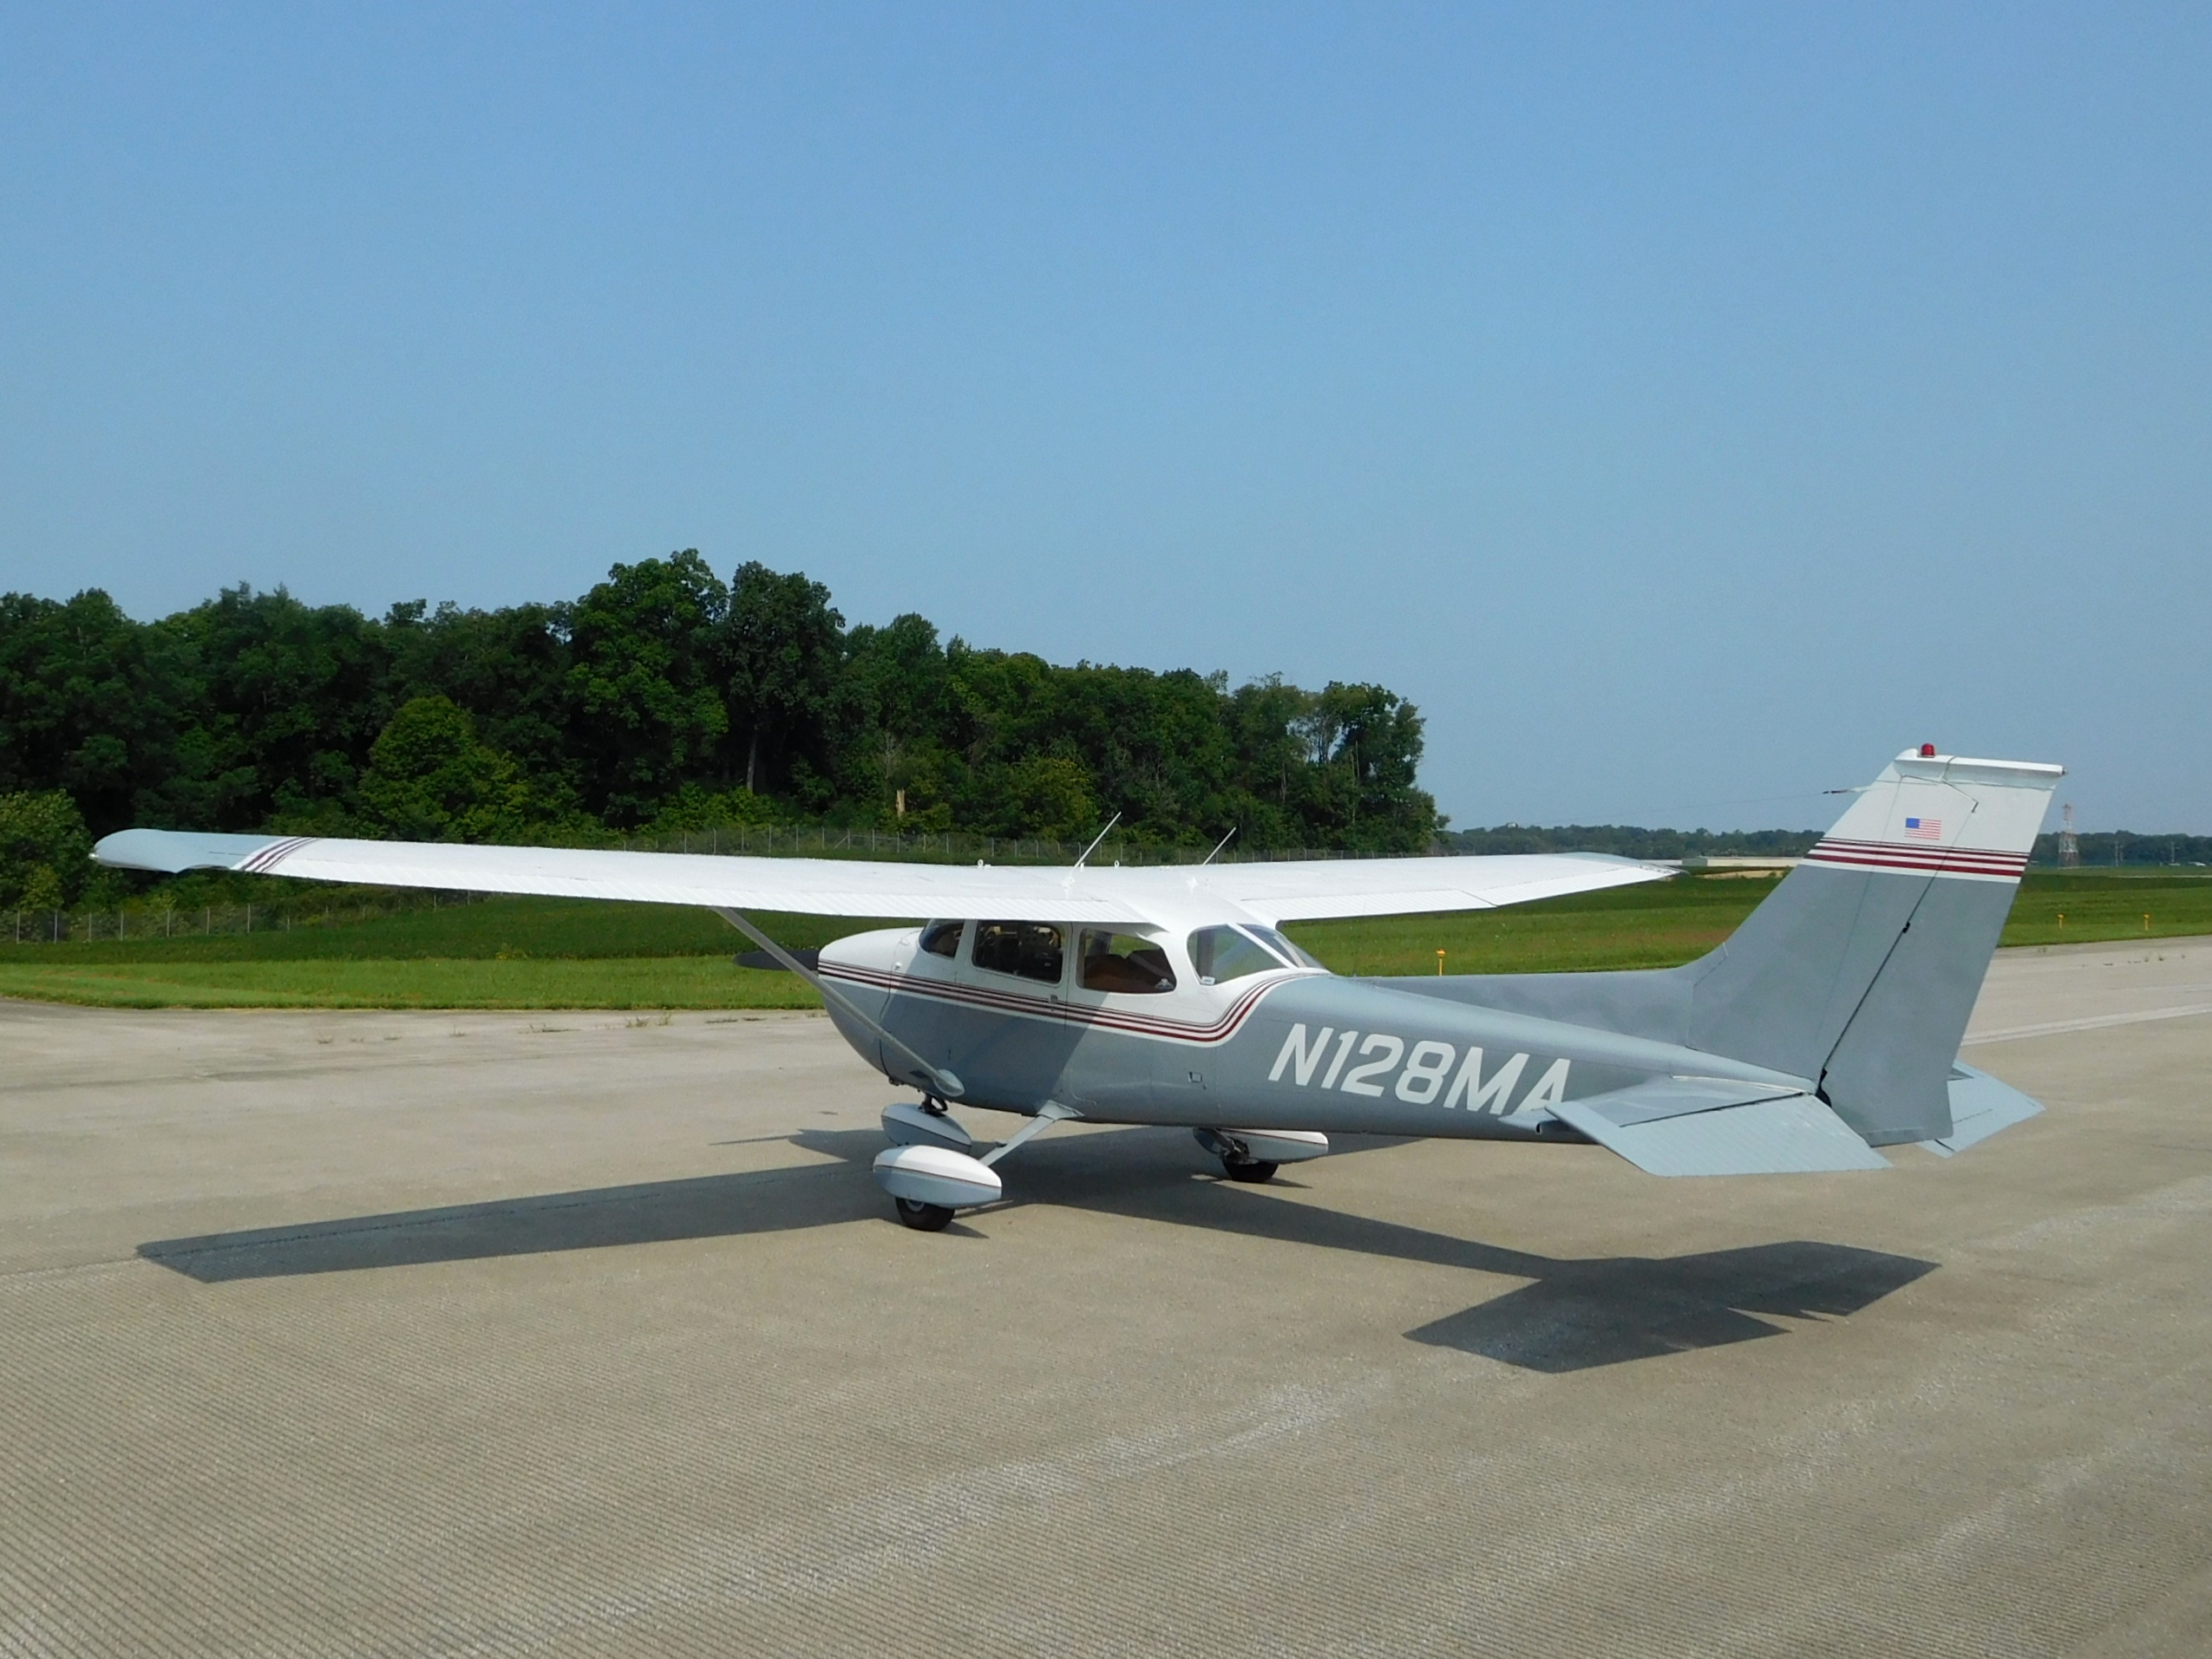 1972 Cessna 172 N128MA 